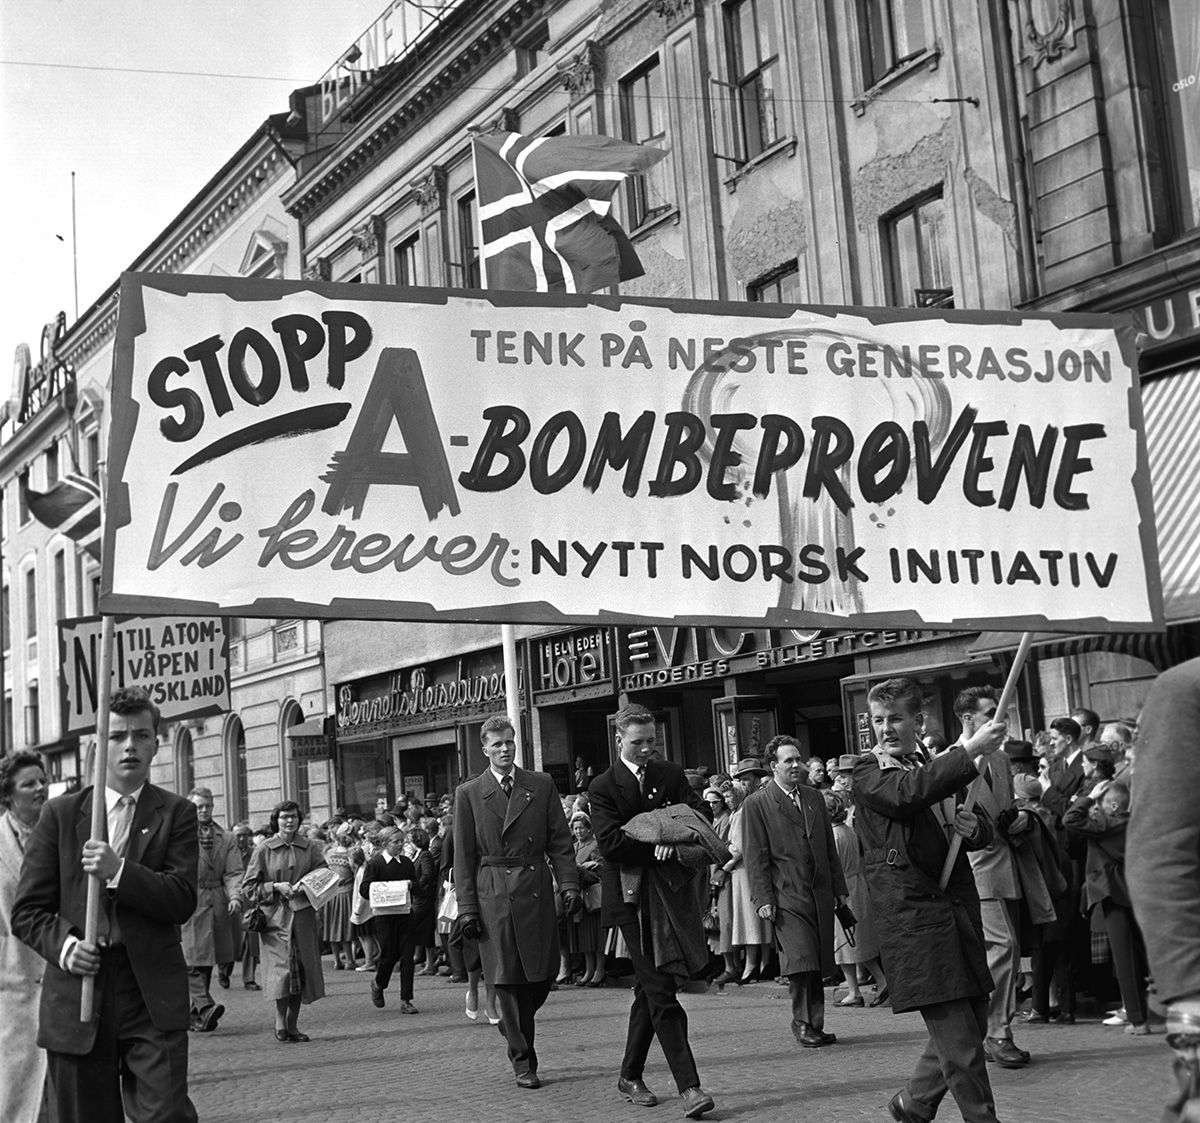 Fotografi av demonstrasjonstog på Karl Johan: parole med tekst: "Stopp A-bombeprøvene. Tenk på neste generasjon. Vi krever nytt norsk initiativ"